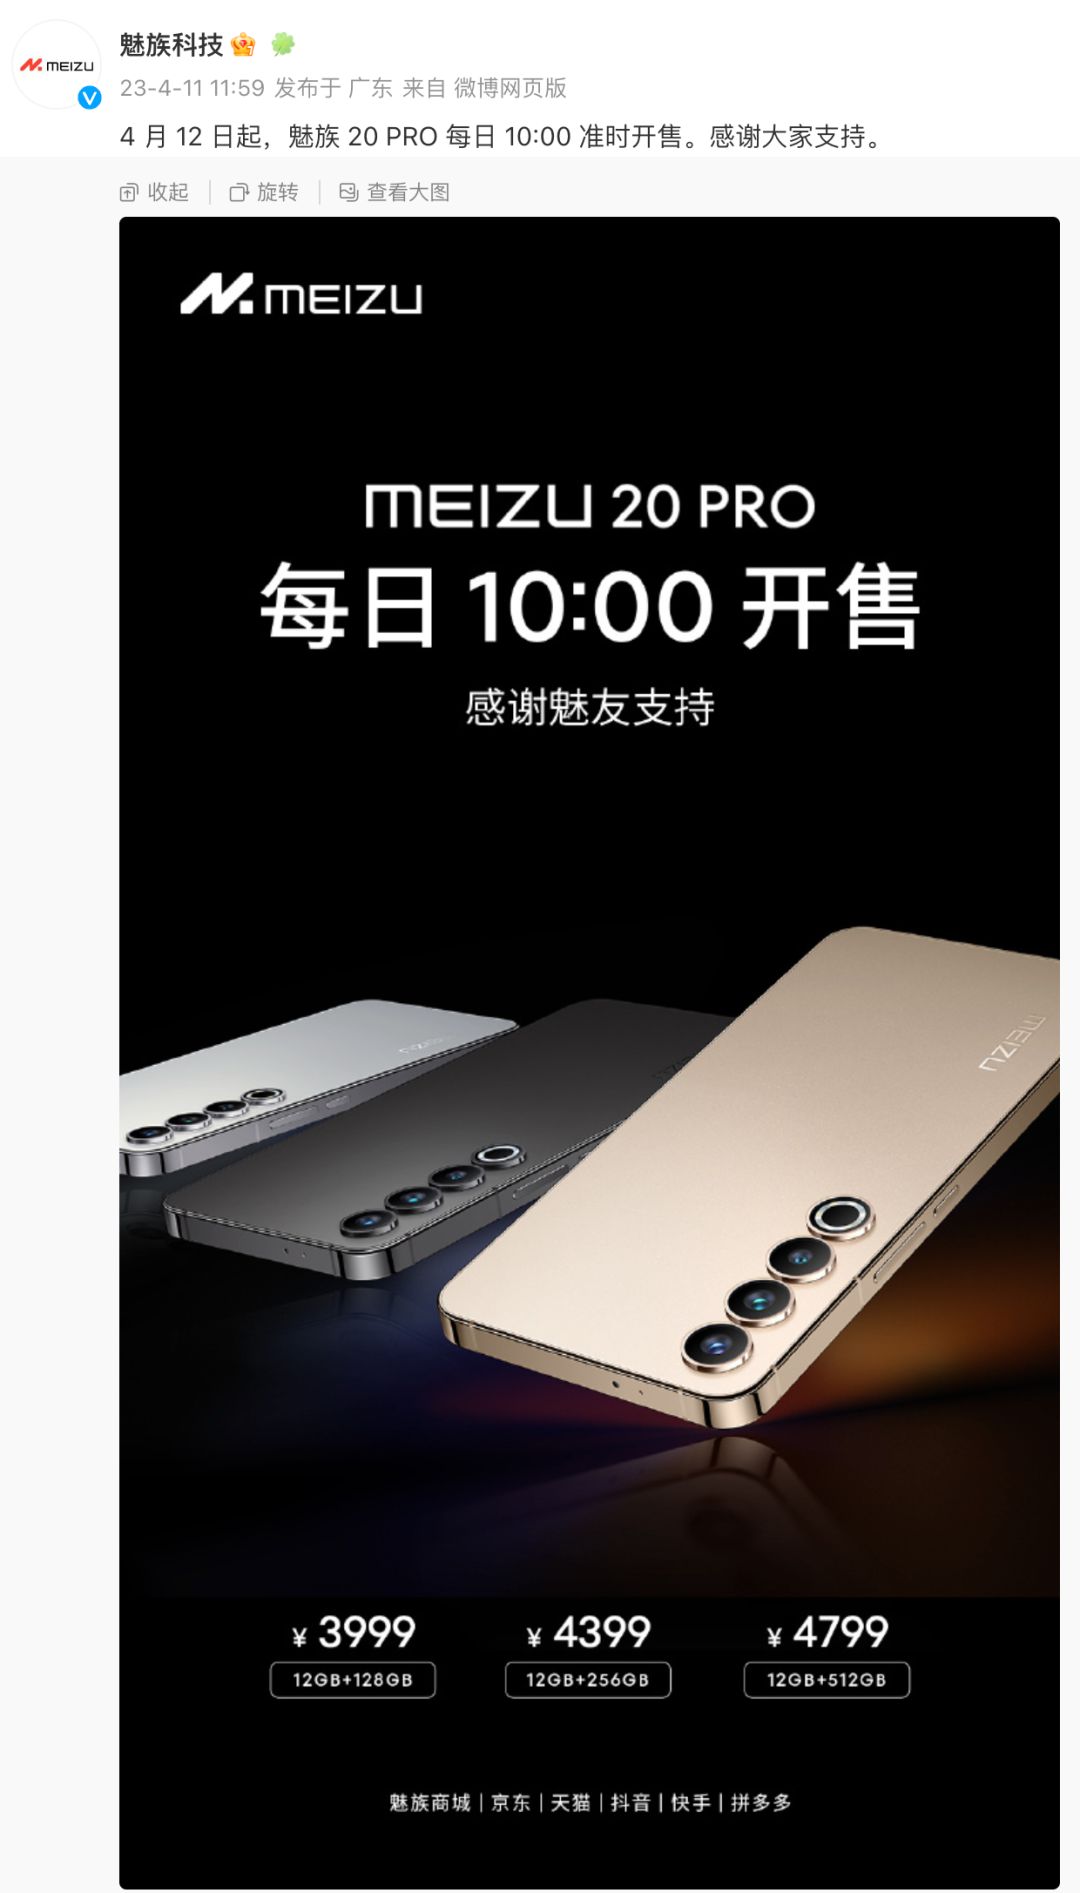 魅族18 Pro（8GB/128GB/全网通/5G版）评测图解产品亮点-ZOL中关村在线